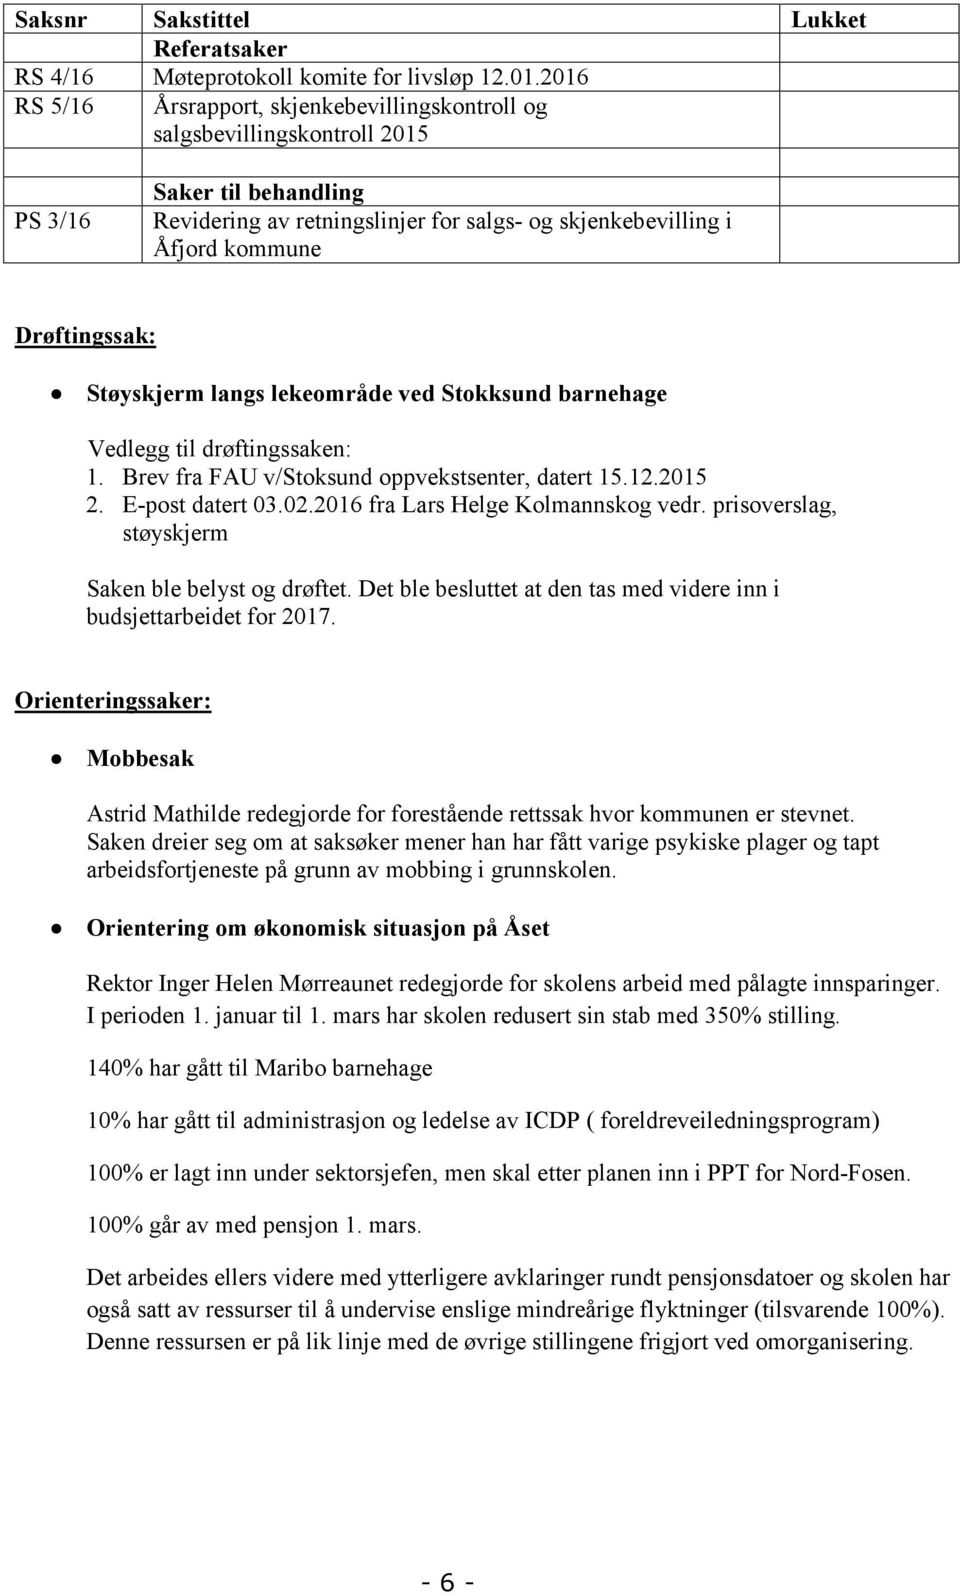 Drøftingssak: Støyskjerm langs lekeområde ved Stokksund barnehage Vedlegg til drøftingssaken: 1. Brev fra FAU v/stoksund oppvekstsenter, datert 15.12.2015 2. E-post datert 03.02.